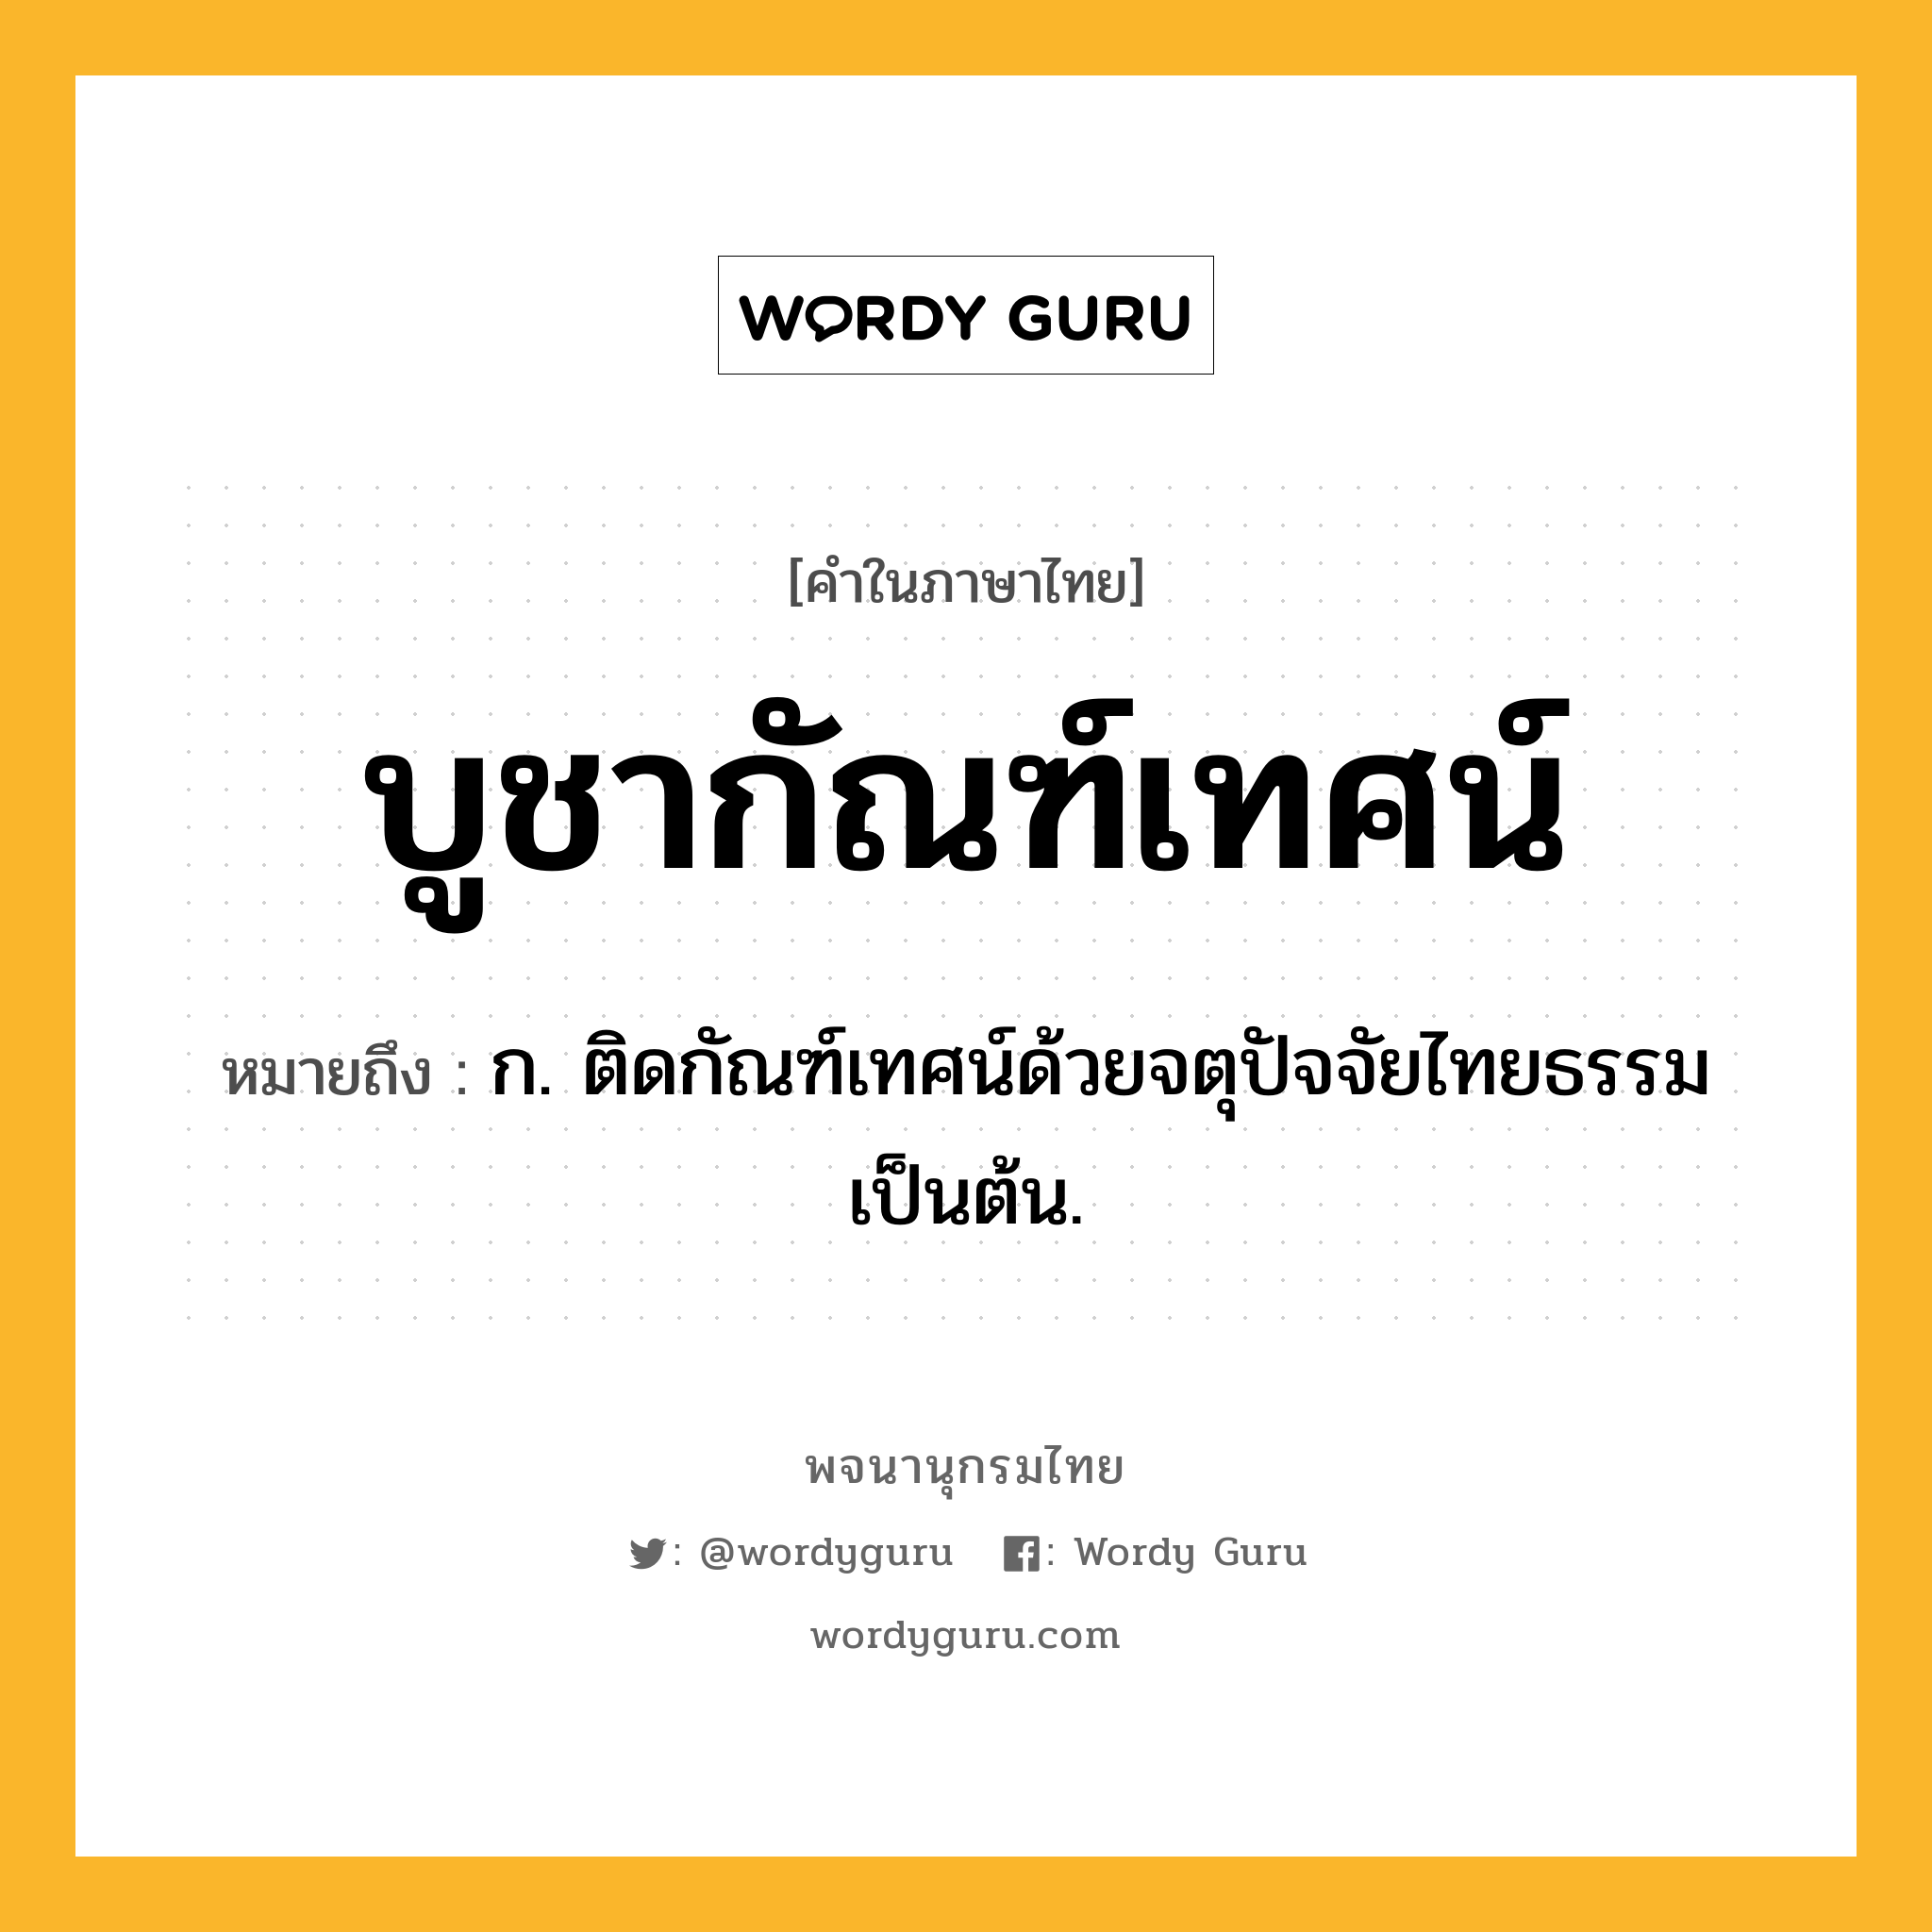 บูชากัณฑ์เทศน์ ความหมาย หมายถึงอะไร?, คำในภาษาไทย บูชากัณฑ์เทศน์ หมายถึง ก. ติดกัณฑ์เทศน์ด้วยจตุปัจจัยไทยธรรมเป็นต้น.